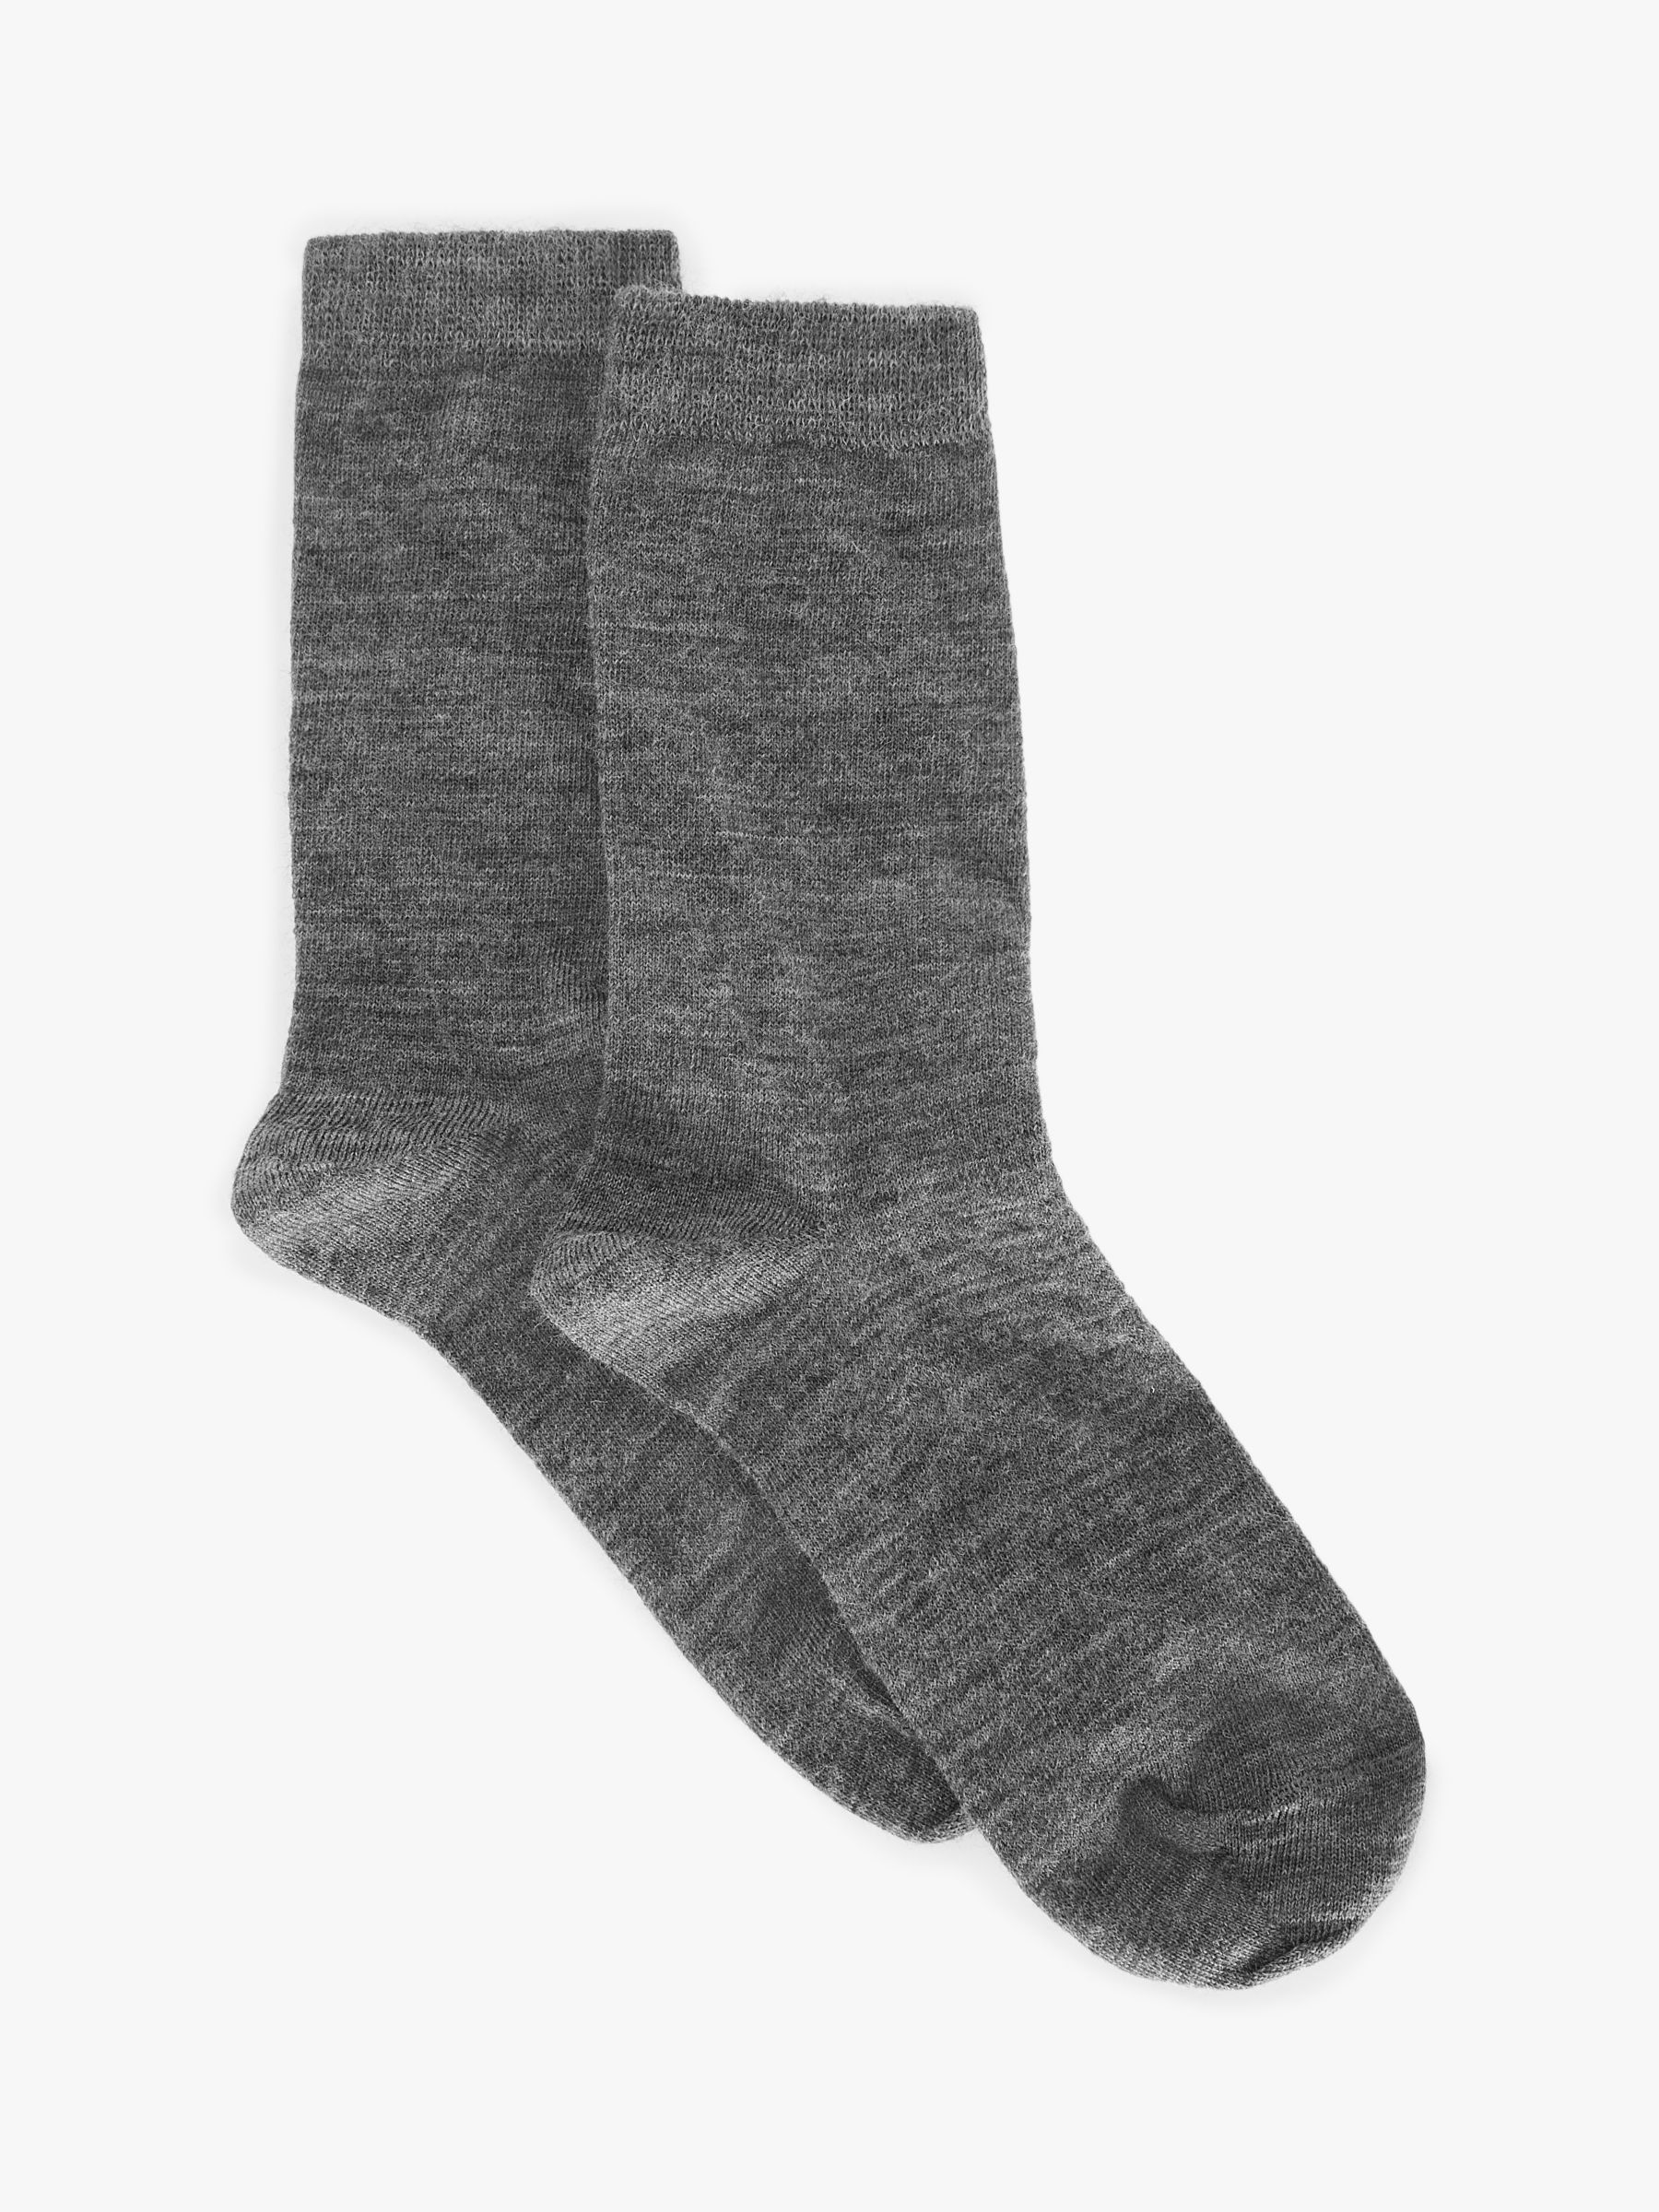 John Lewis & Partners Women's Merino Wool Mix Roll Top Ankle Socks ...